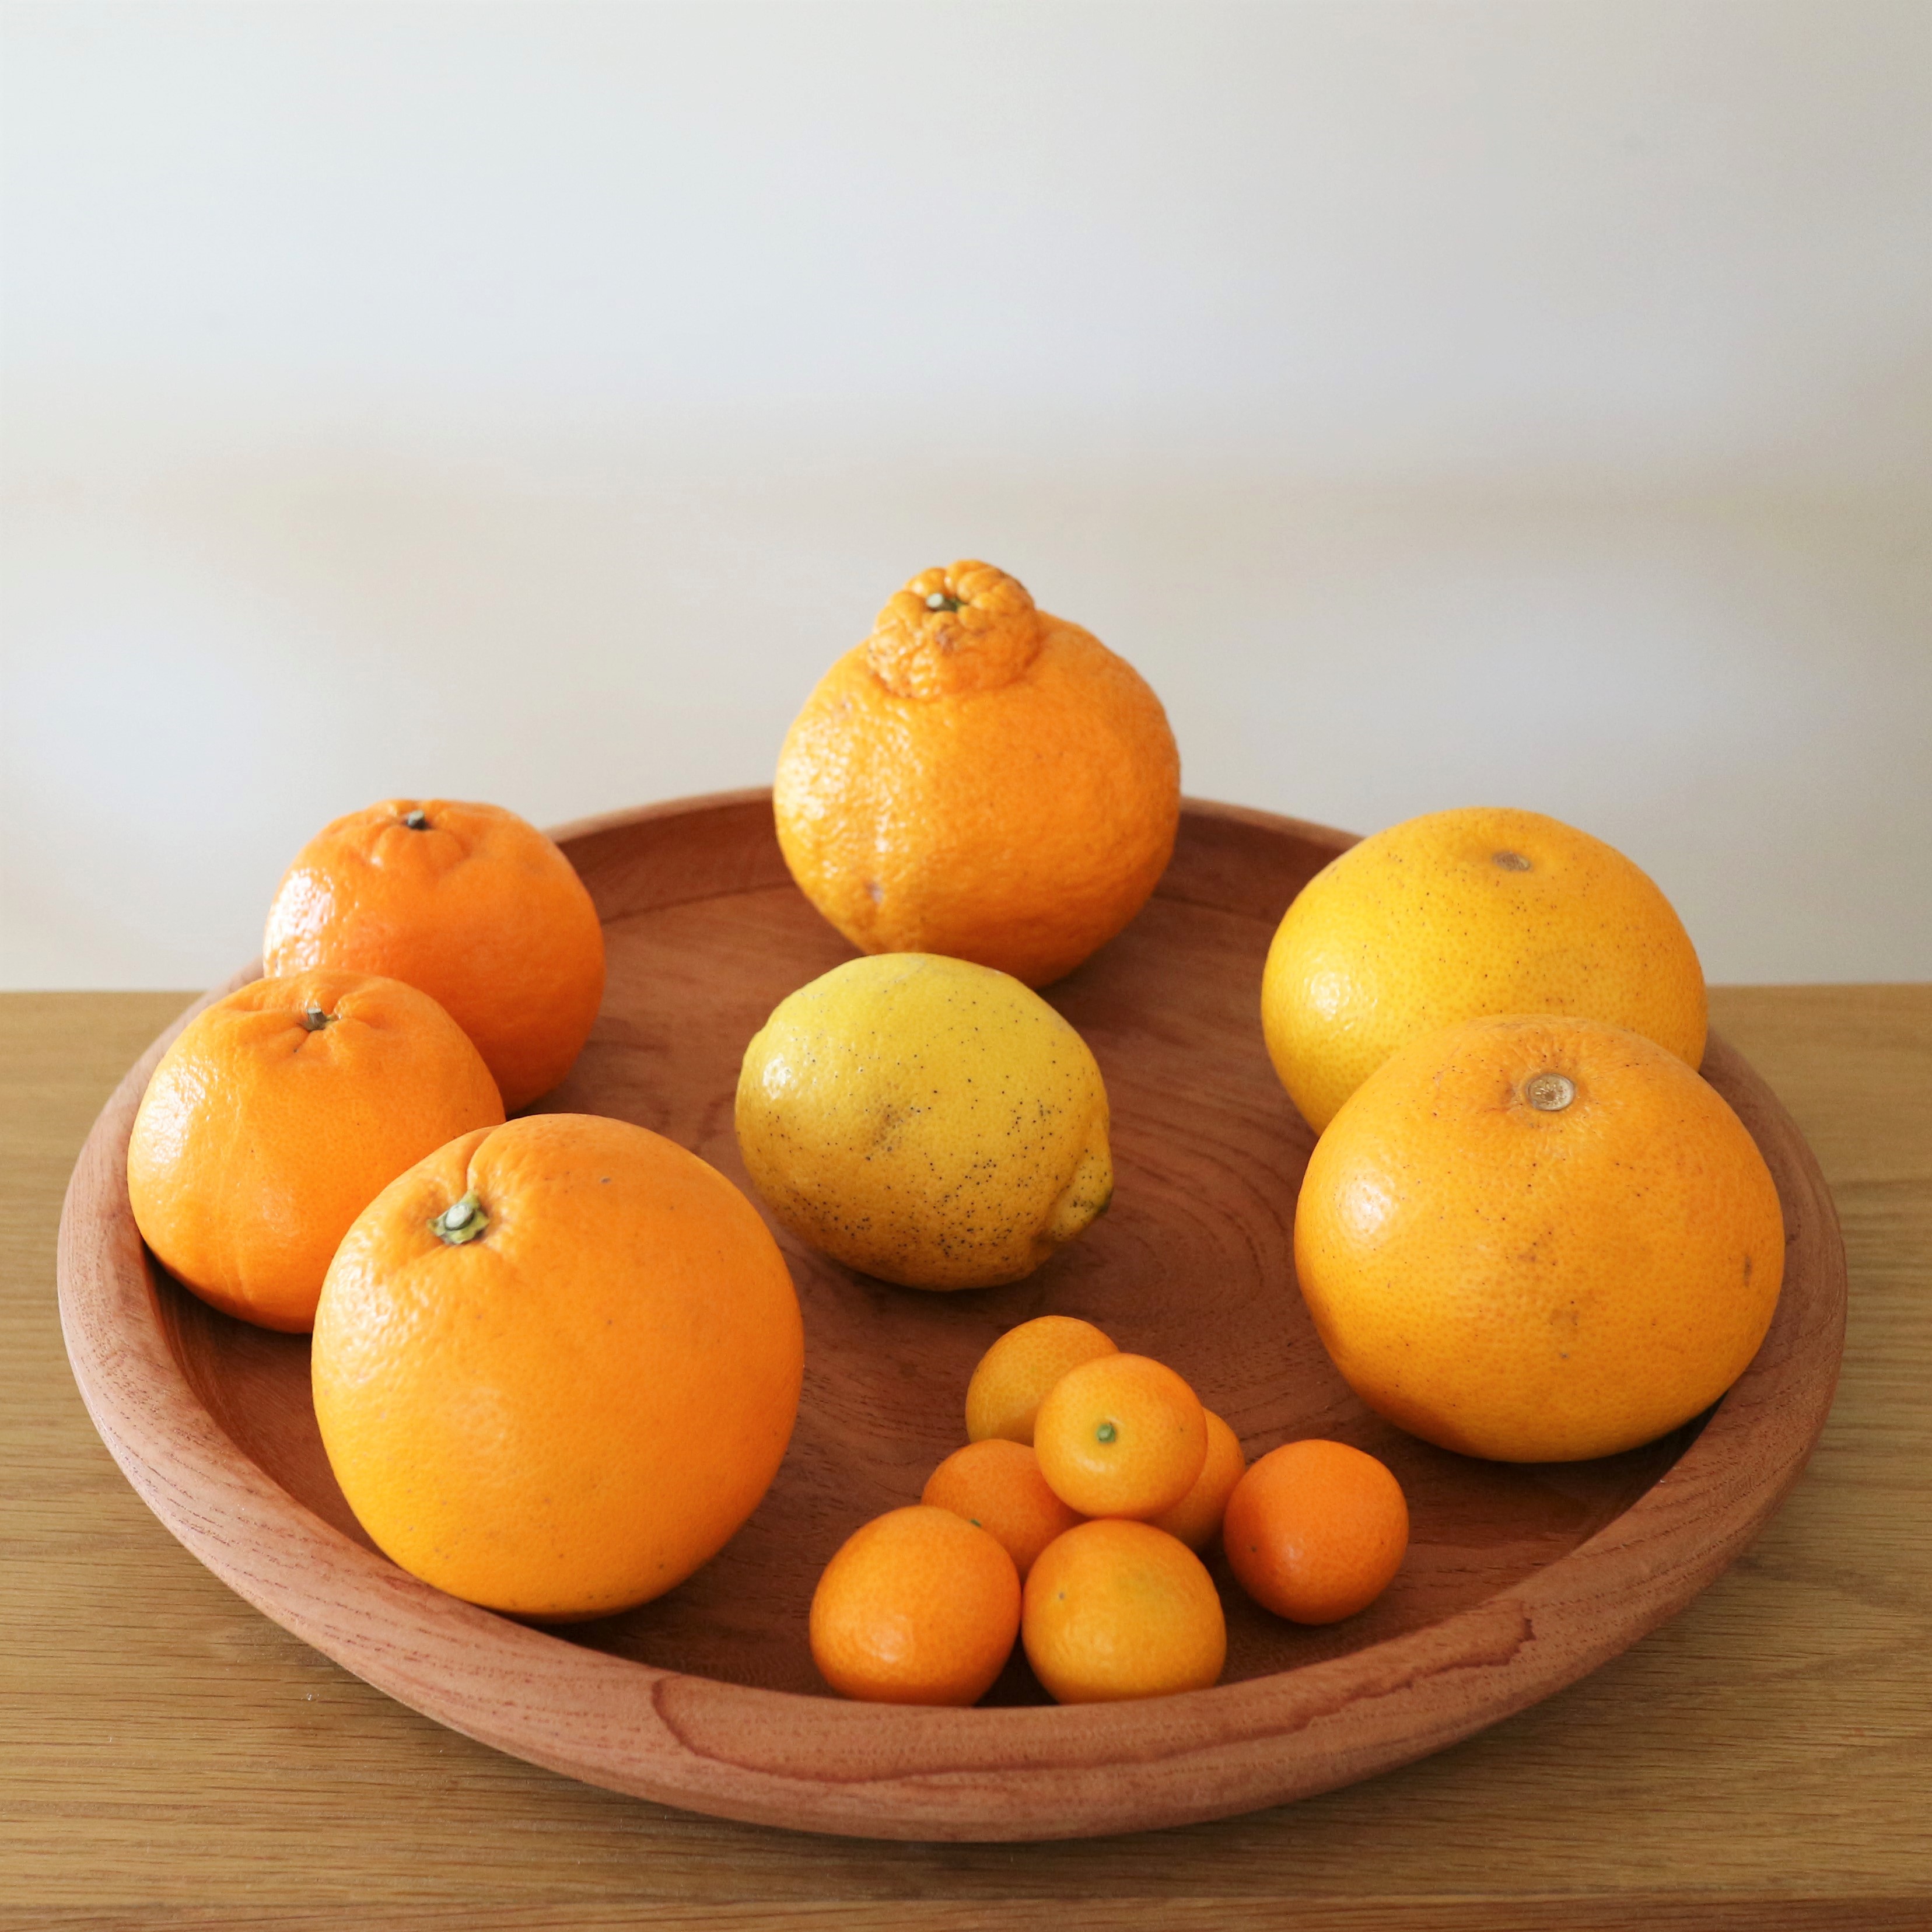 ビオ・マルシェの国産有機柑橘カレンダー 有機レモン、有機ゆず、有機